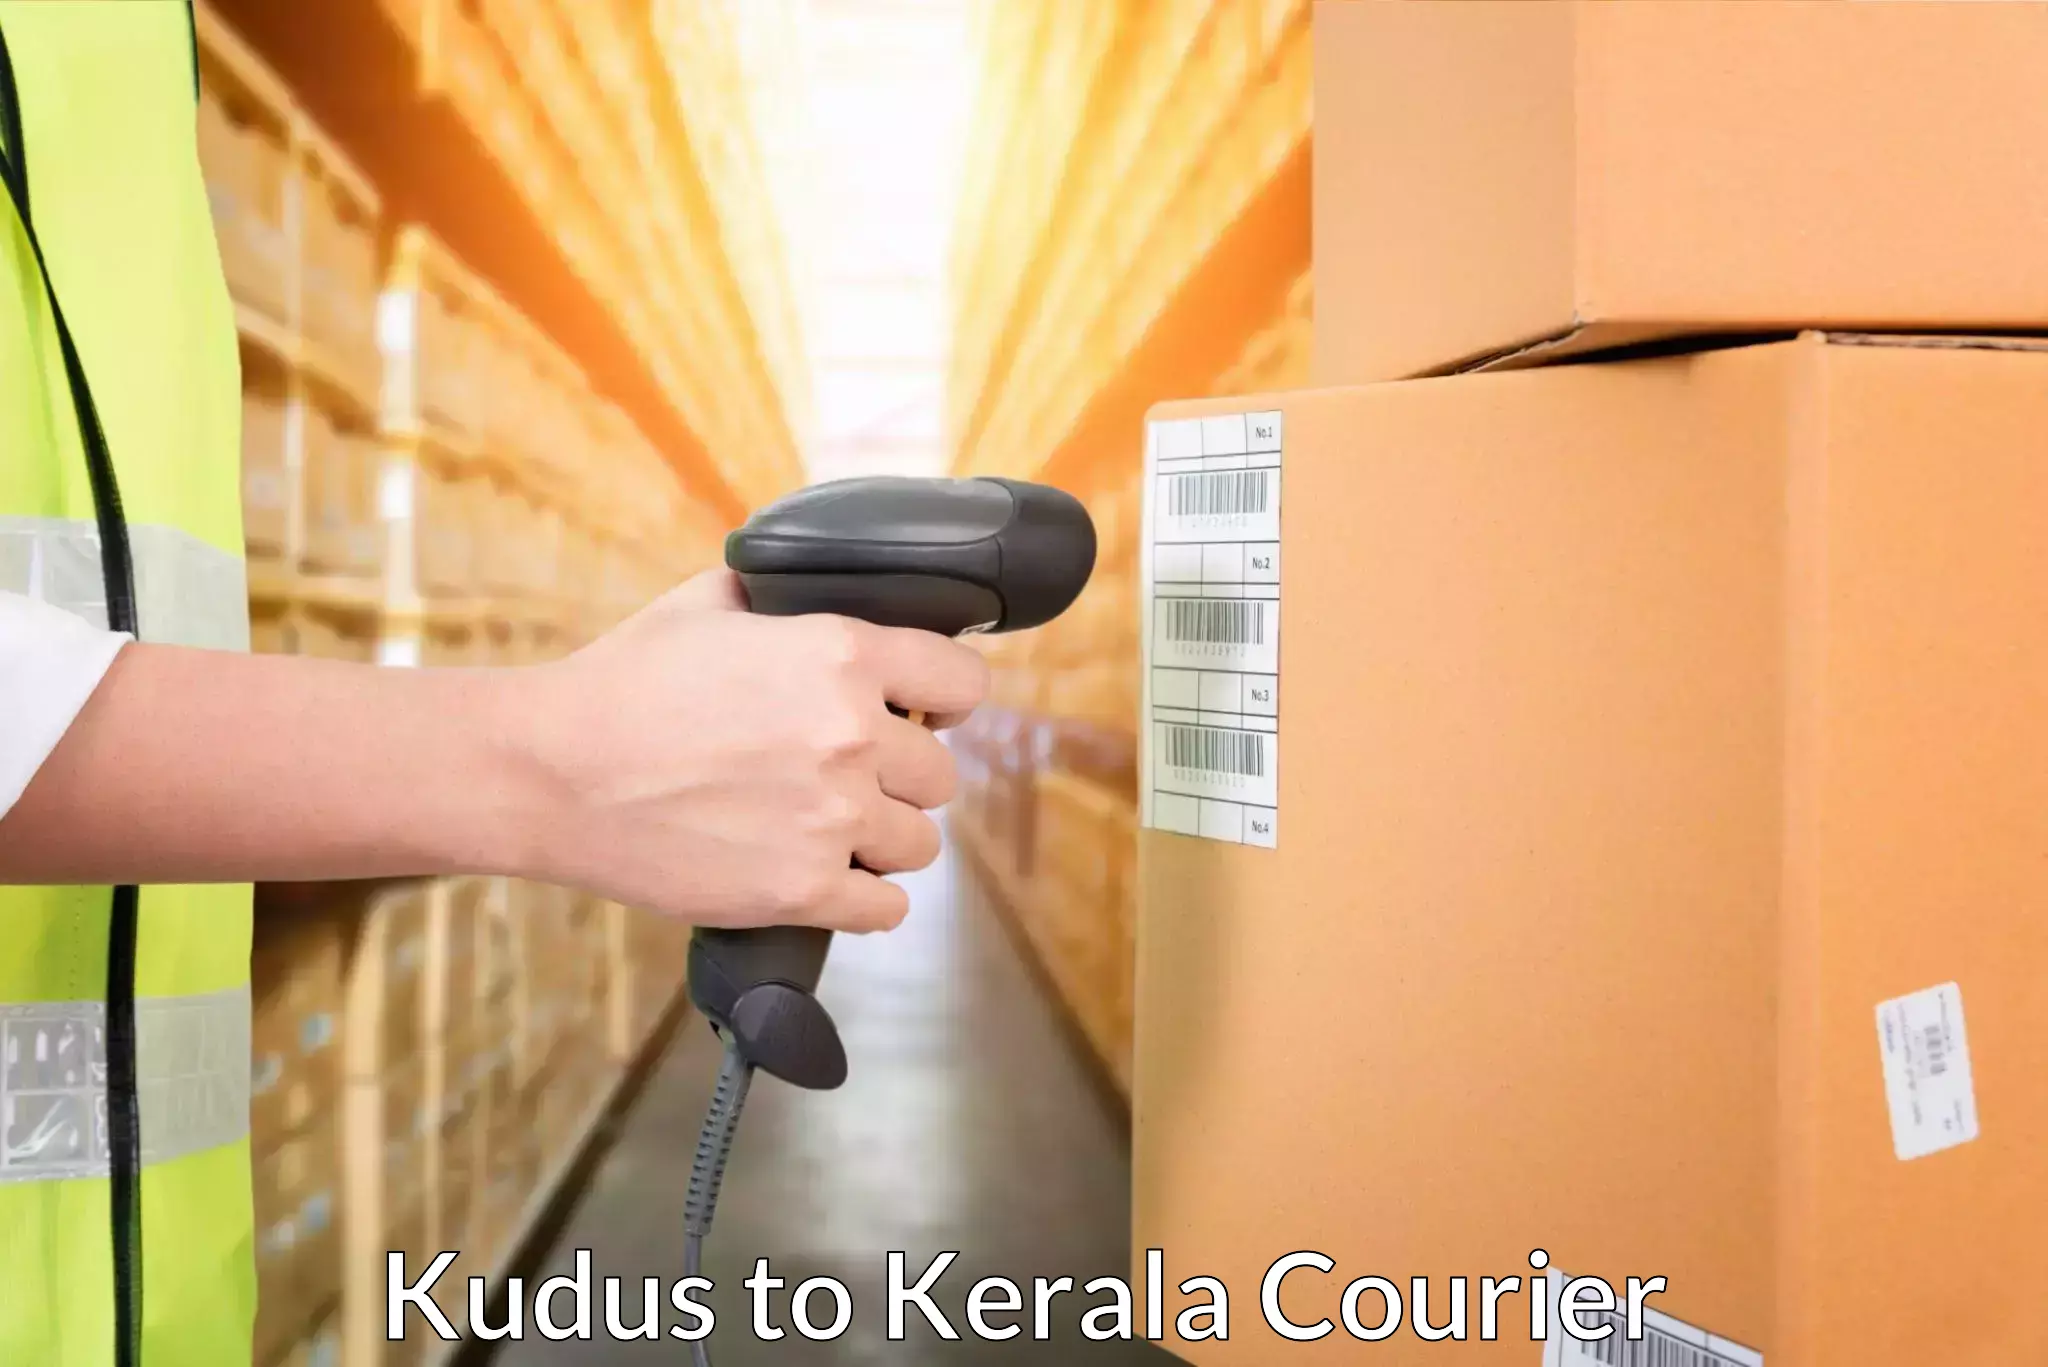 Customized shipping options Kudus to Kanjiramattom